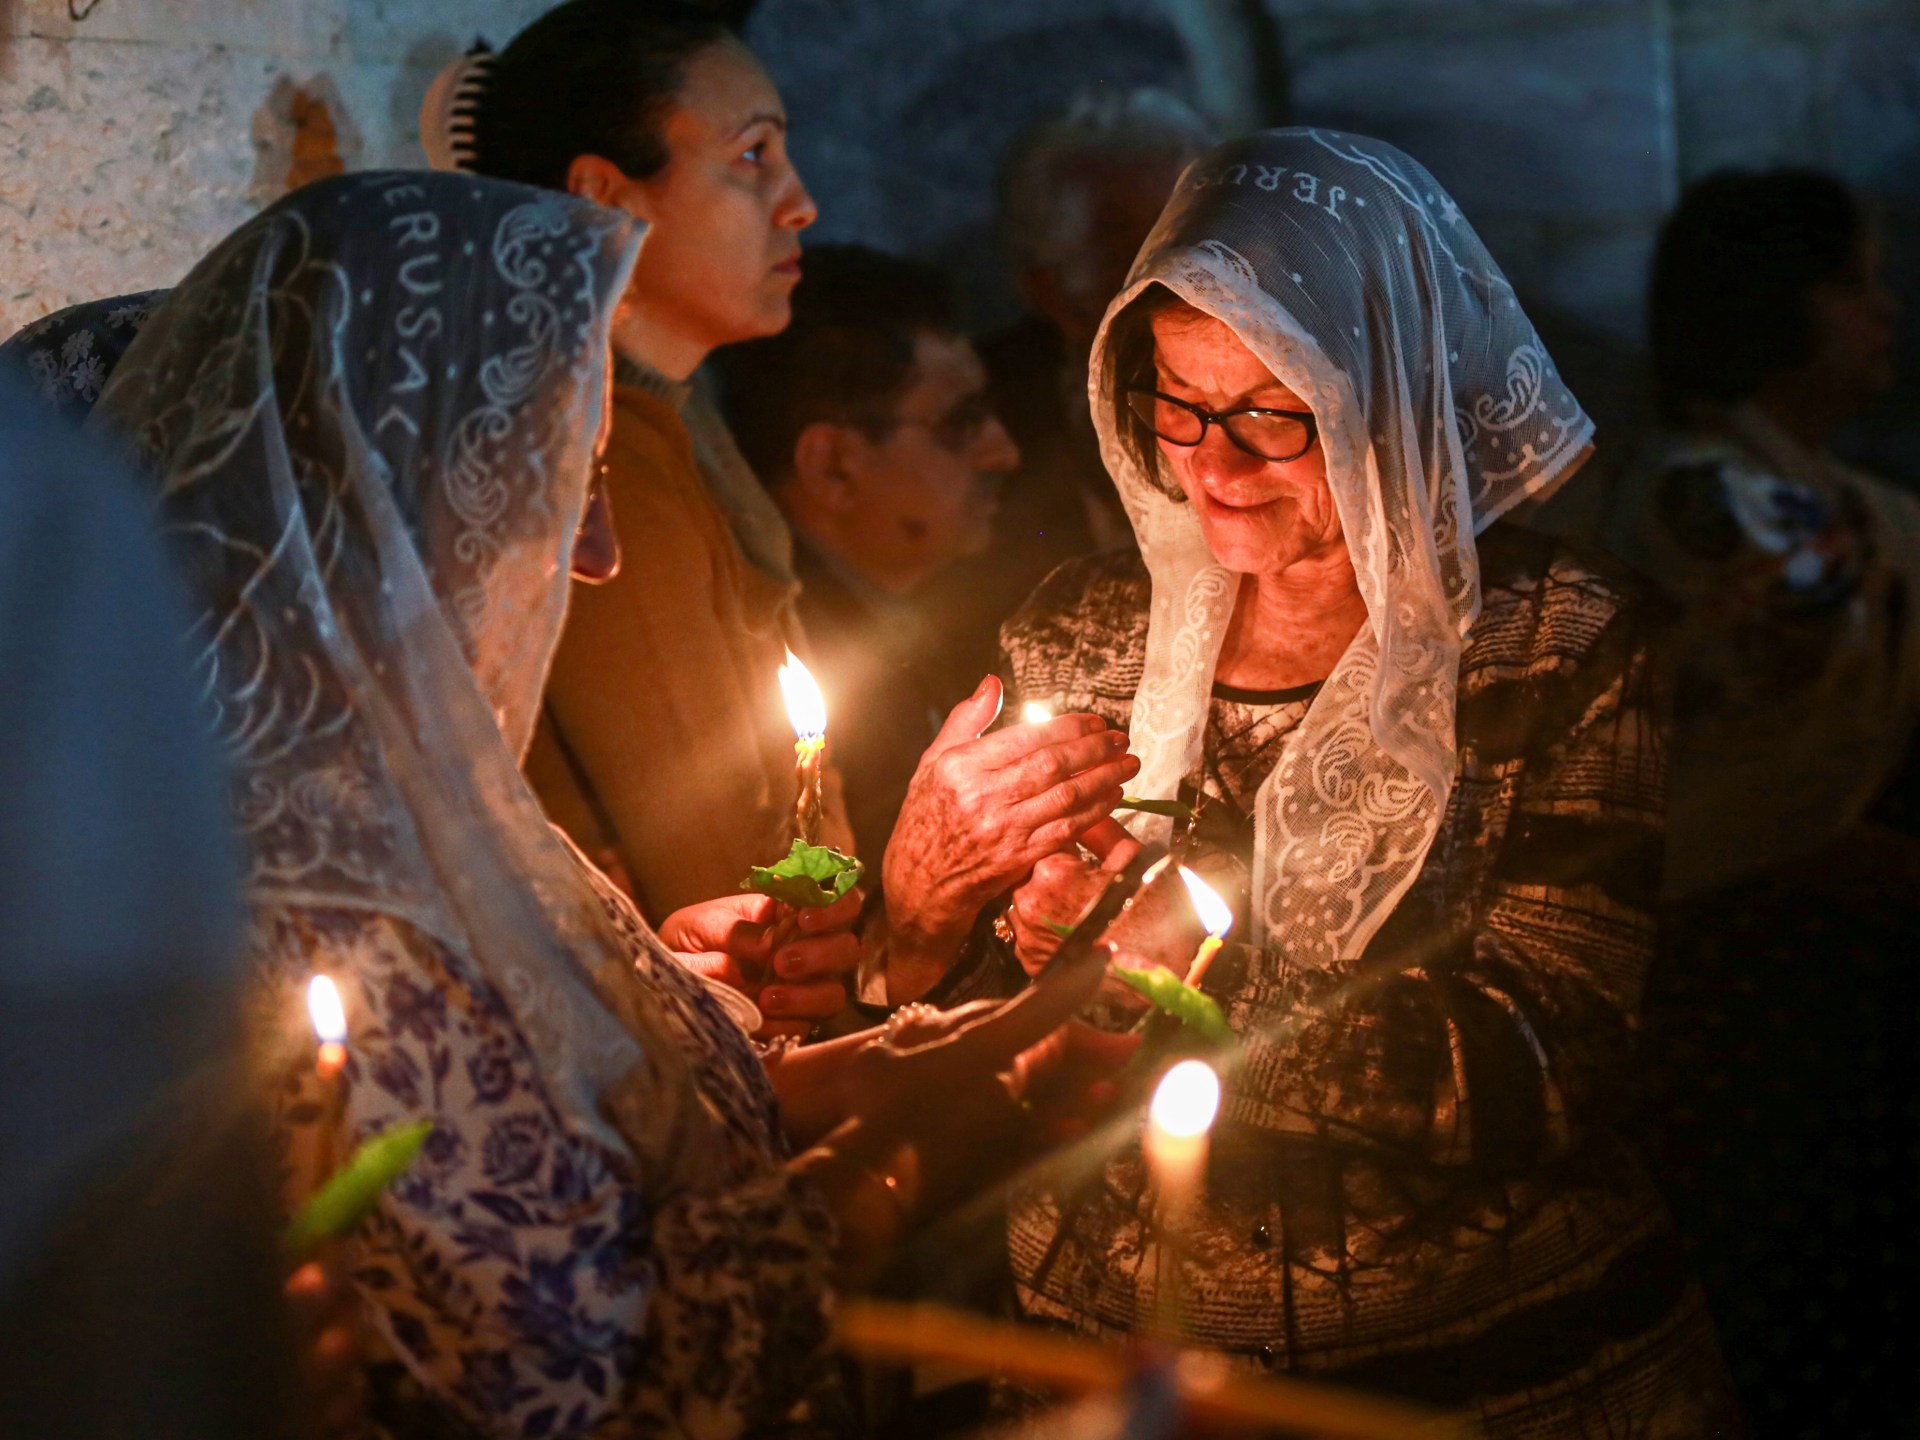 تحت الهجوم الإسرائيلي: من هم مسيحيو غزة؟  |  أخبار الصراع الإسرائيلي الفلسطيني